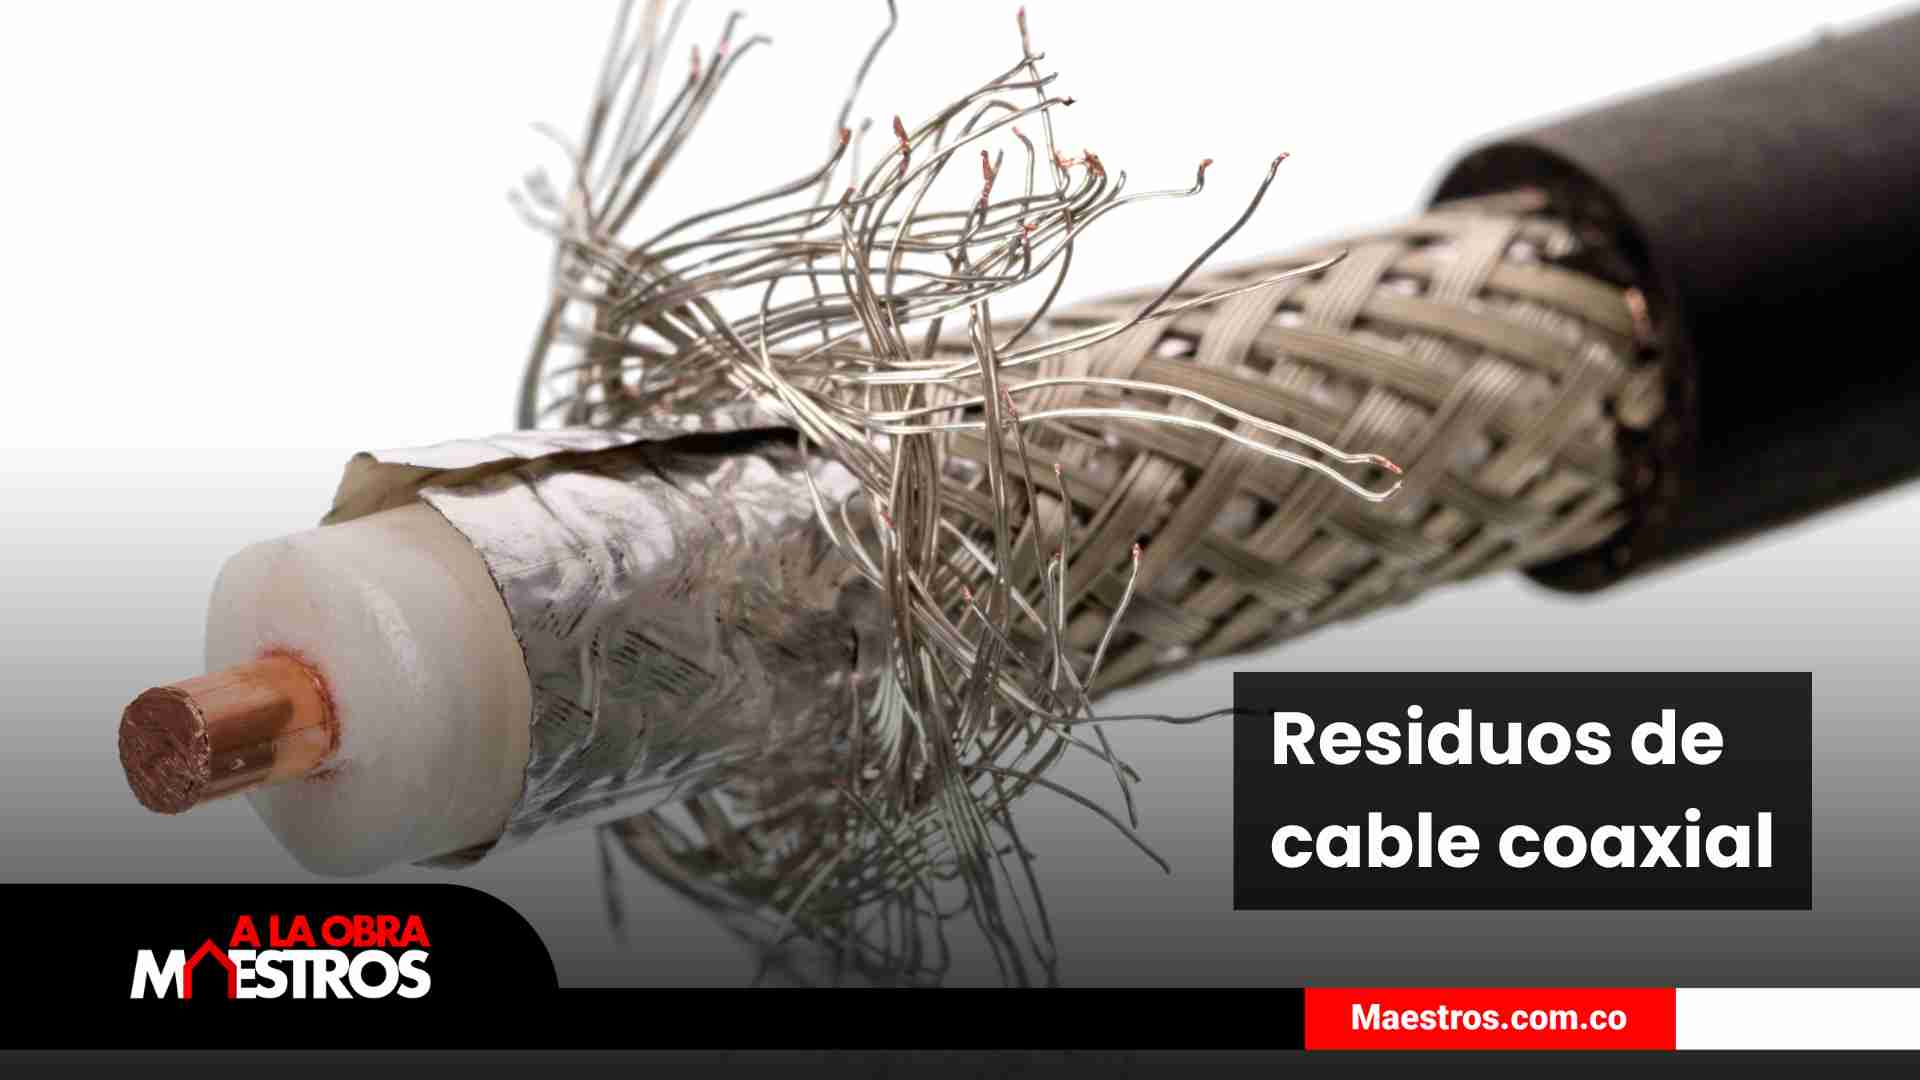 Manejo de residuos de cable coaxial en la construcción - A la Obra Maestros